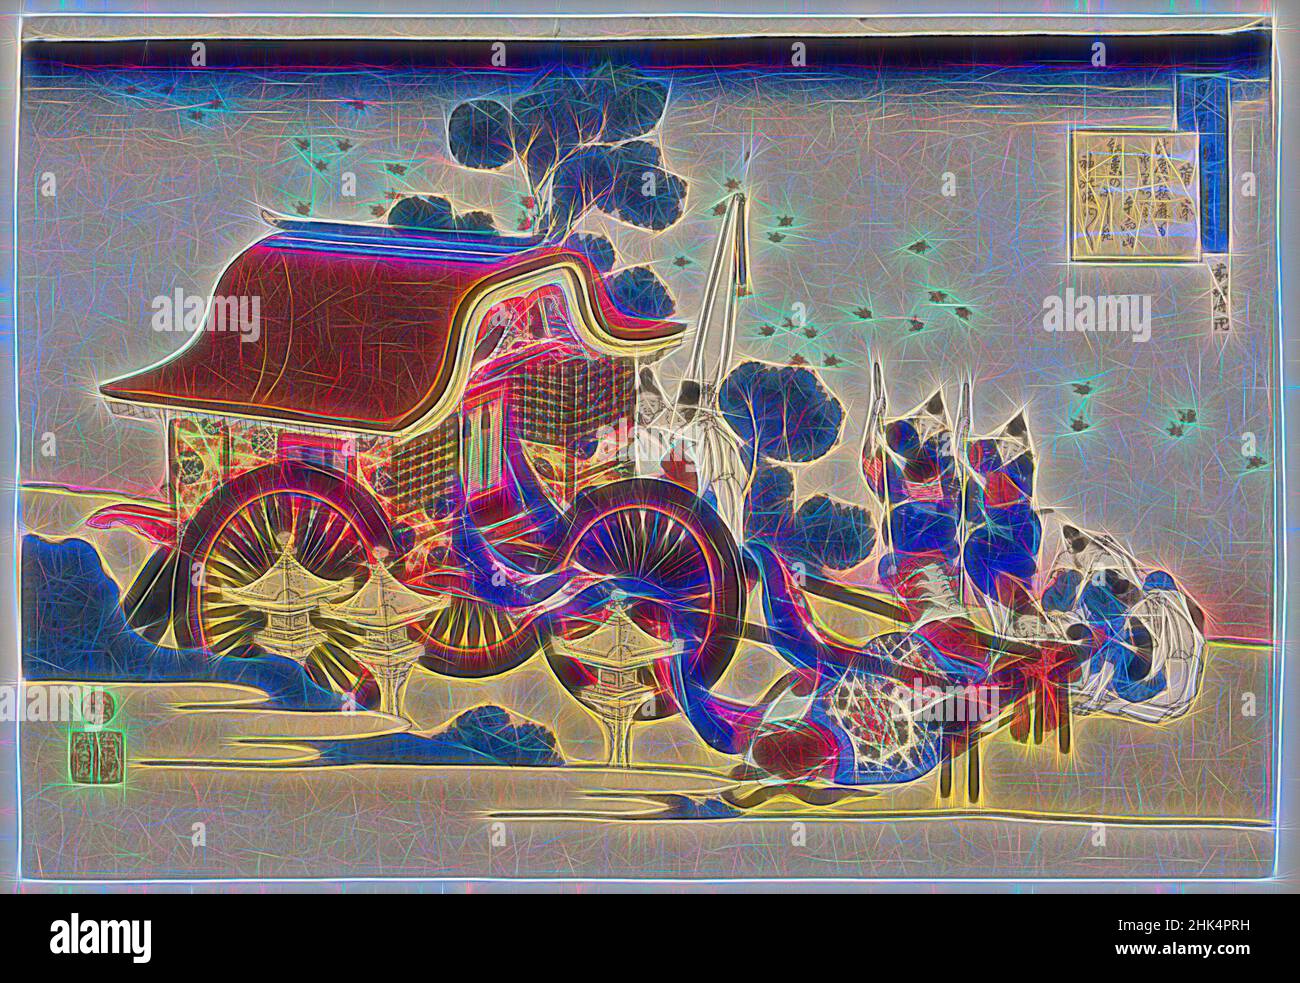 Inspiriert von einem Gedicht von Kanke, aus der Serie Hundert Gedichte Explained by the Nurse, Katsushika Hokusai, japanisch, 1760-1849, Farbholzschnitt auf Papier, Japan, ca. 1835-1836, Edo-Periode, 10 3/16 x 14 3/4 Zoll, 25,8 x 37,5 cm, neu erfunden von Artotop. Klassische Kunst neu erfunden mit einem modernen Twist. Design von warmen fröhlichen Leuchten der Helligkeit und Lichtstrahl Strahlkraft. Fotografie inspiriert von Surrealismus und Futurismus, umarmt dynamische Energie der modernen Technologie, Bewegung, Geschwindigkeit und Kultur zu revolutionieren Stockfoto